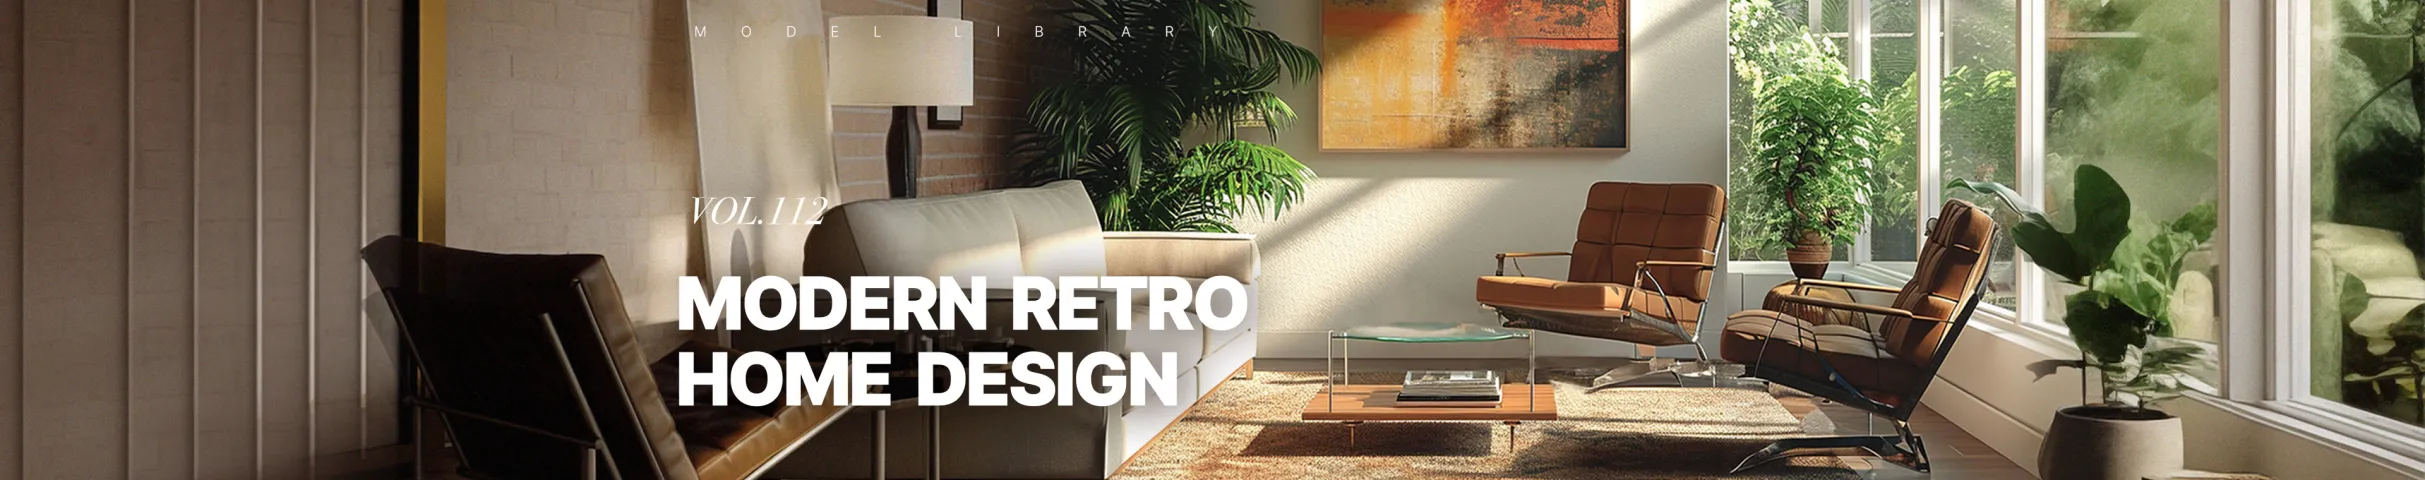 Modern Retro Home Design